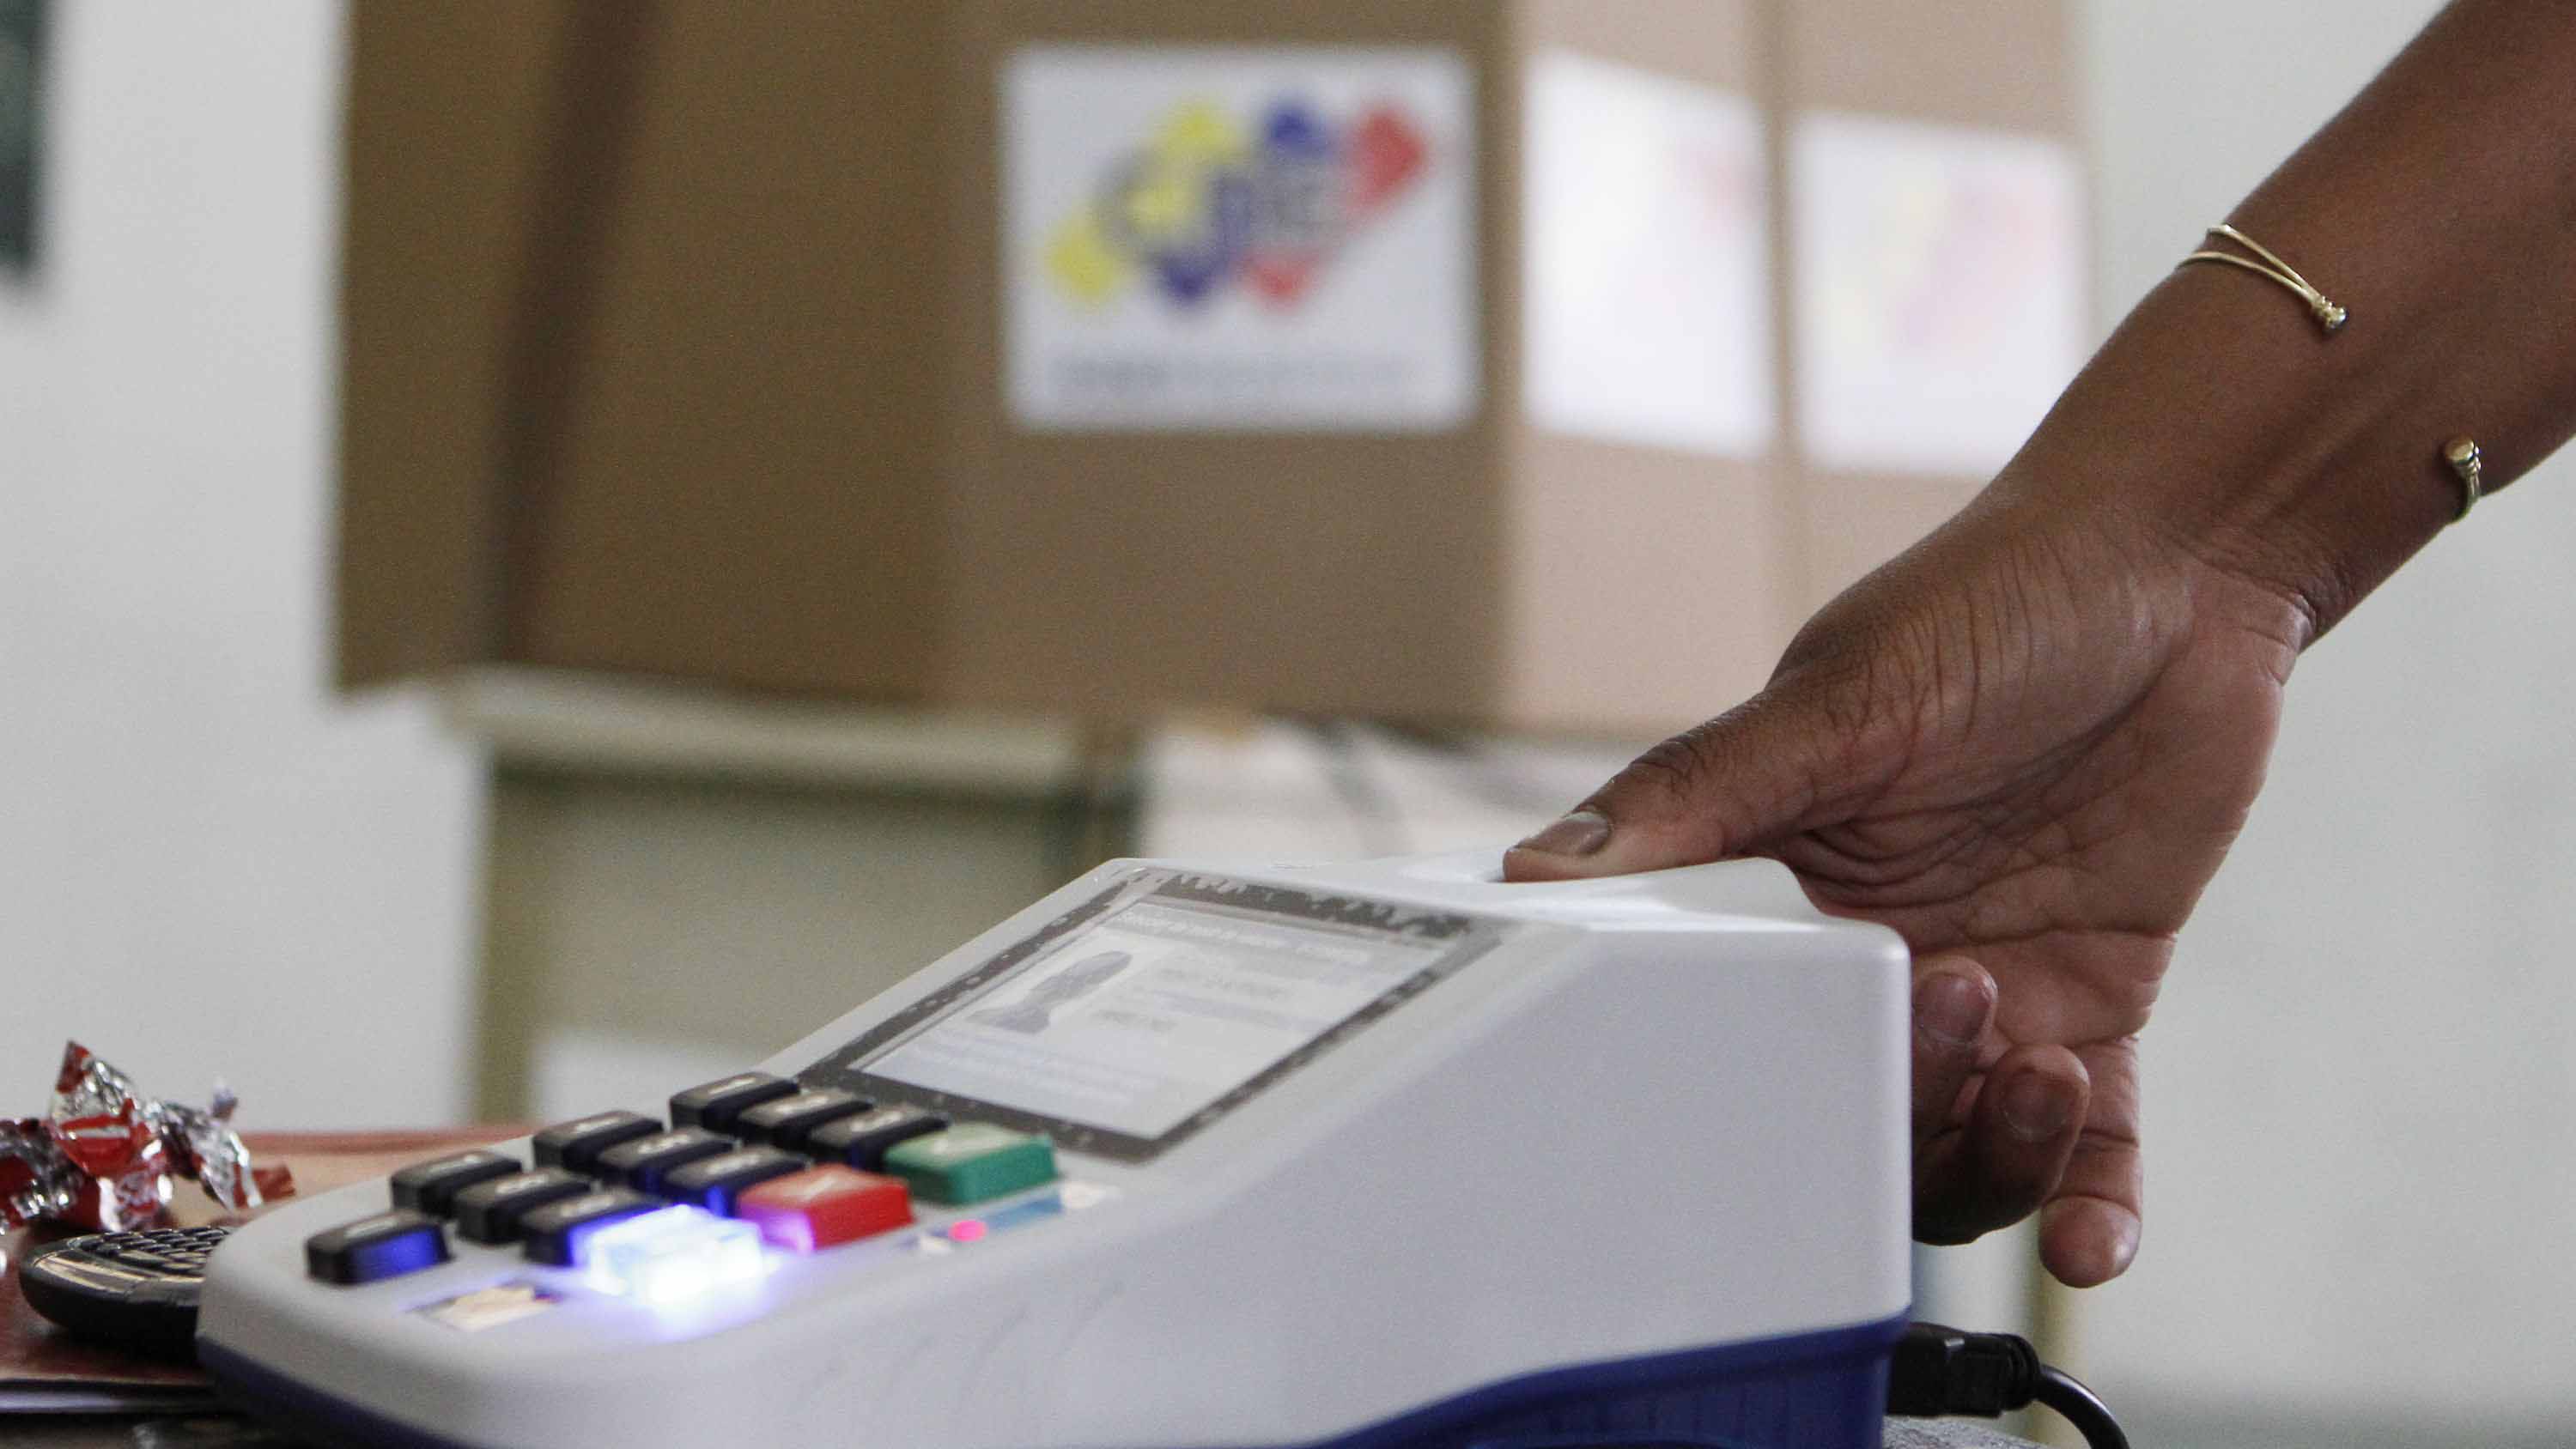 Doble Llave - Este miércoles #14M auditan el software y el Registro Electoral